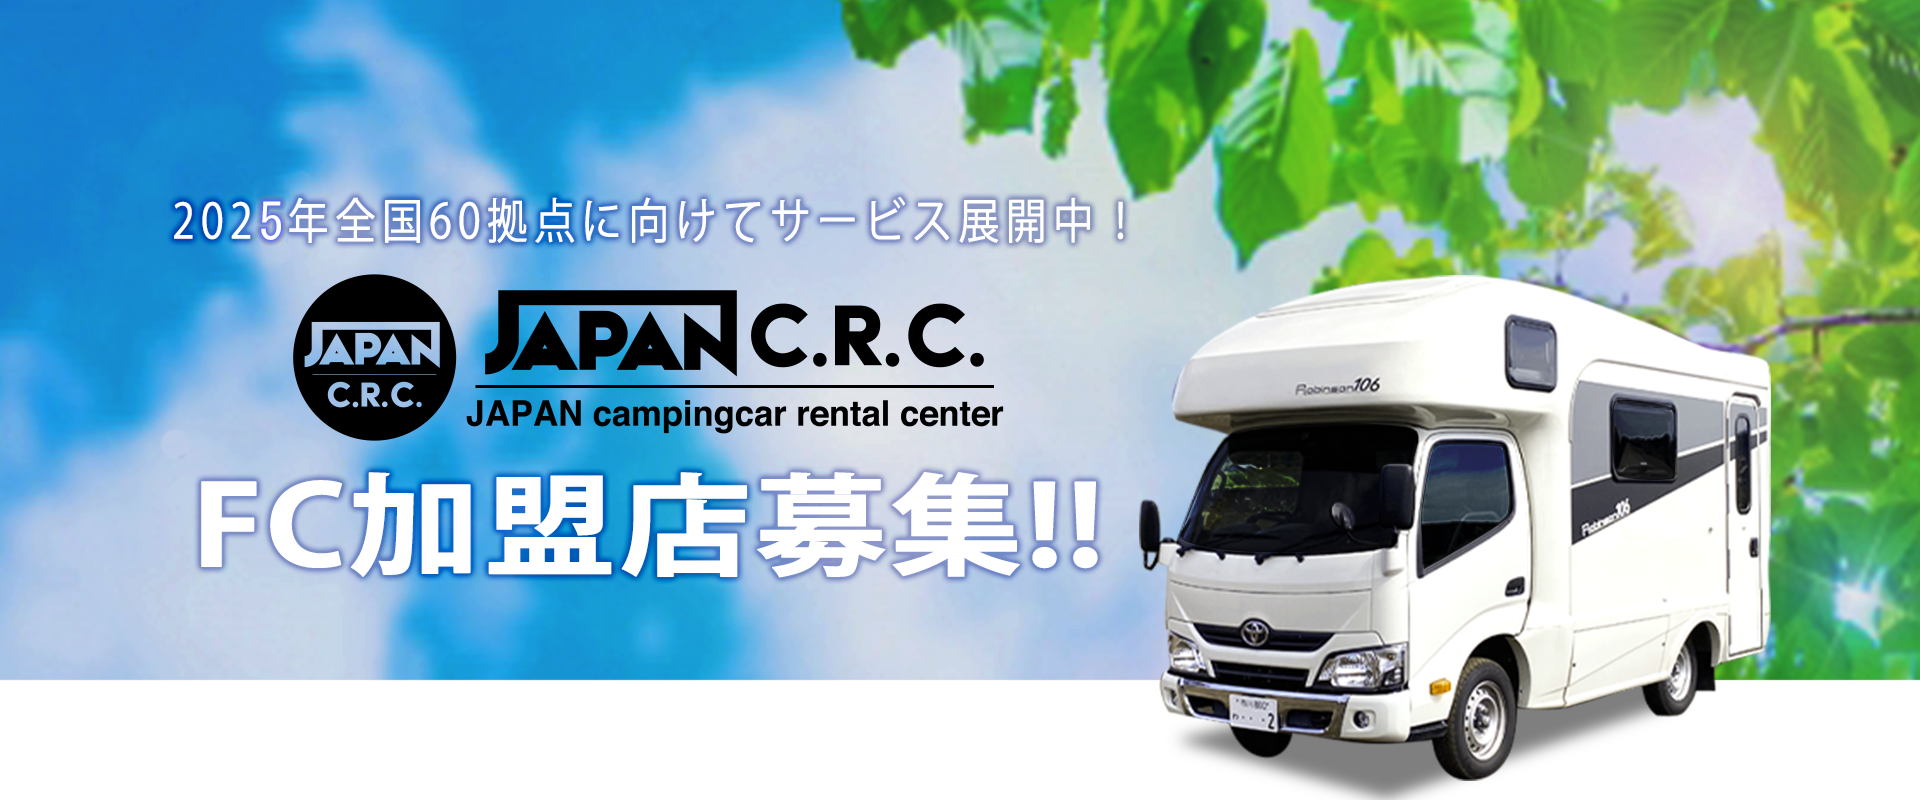 2025年全国60拠点に向けてサービス展開中!JAPAN C.R.C. パートナー募集!!